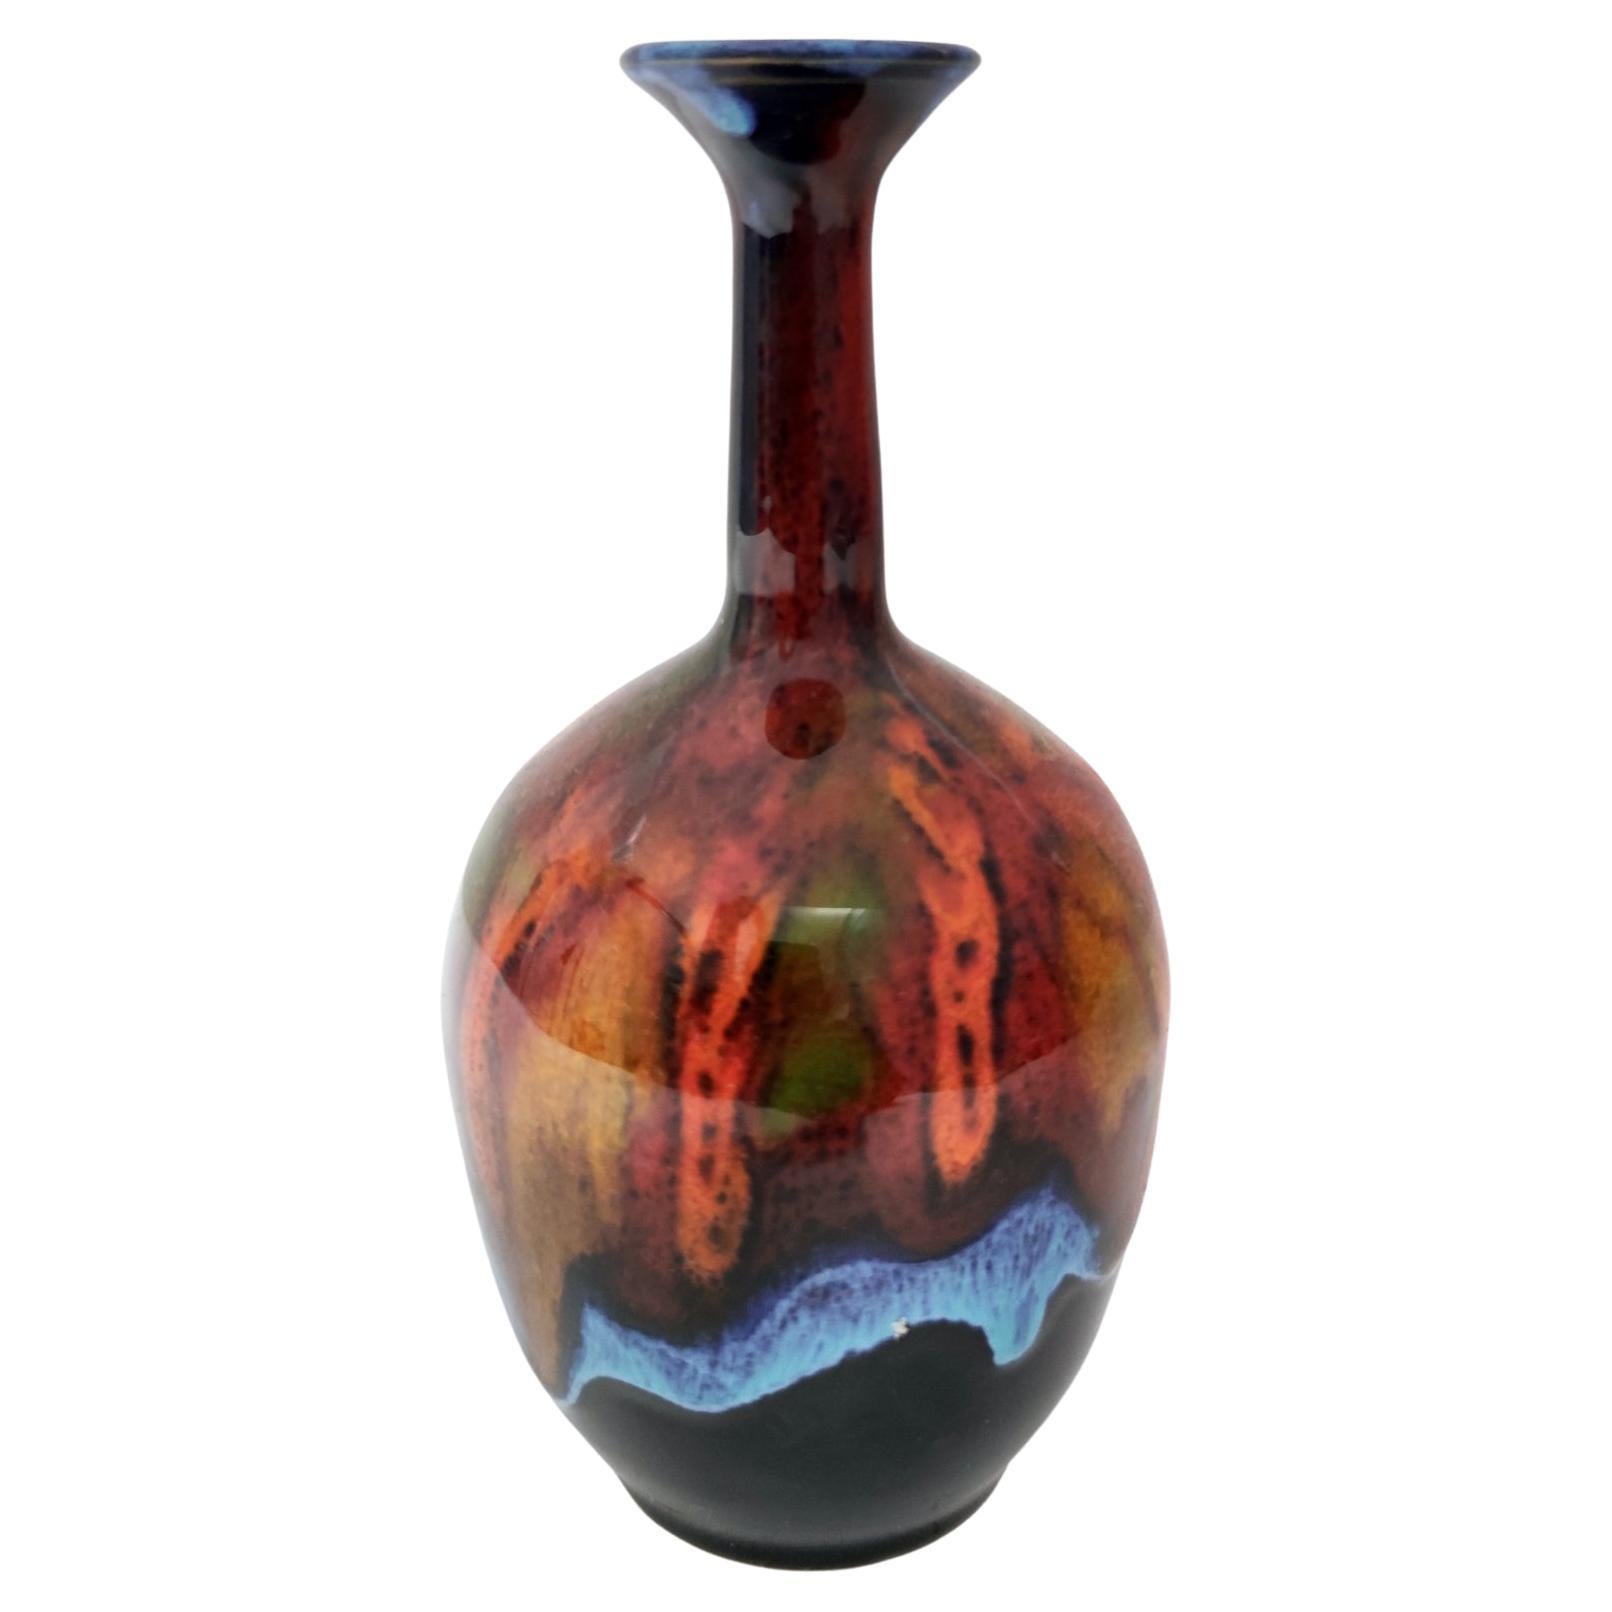 Glazed Earthenware Vase by Giovanni Poggi for San Giorgio Albisola Ceramics